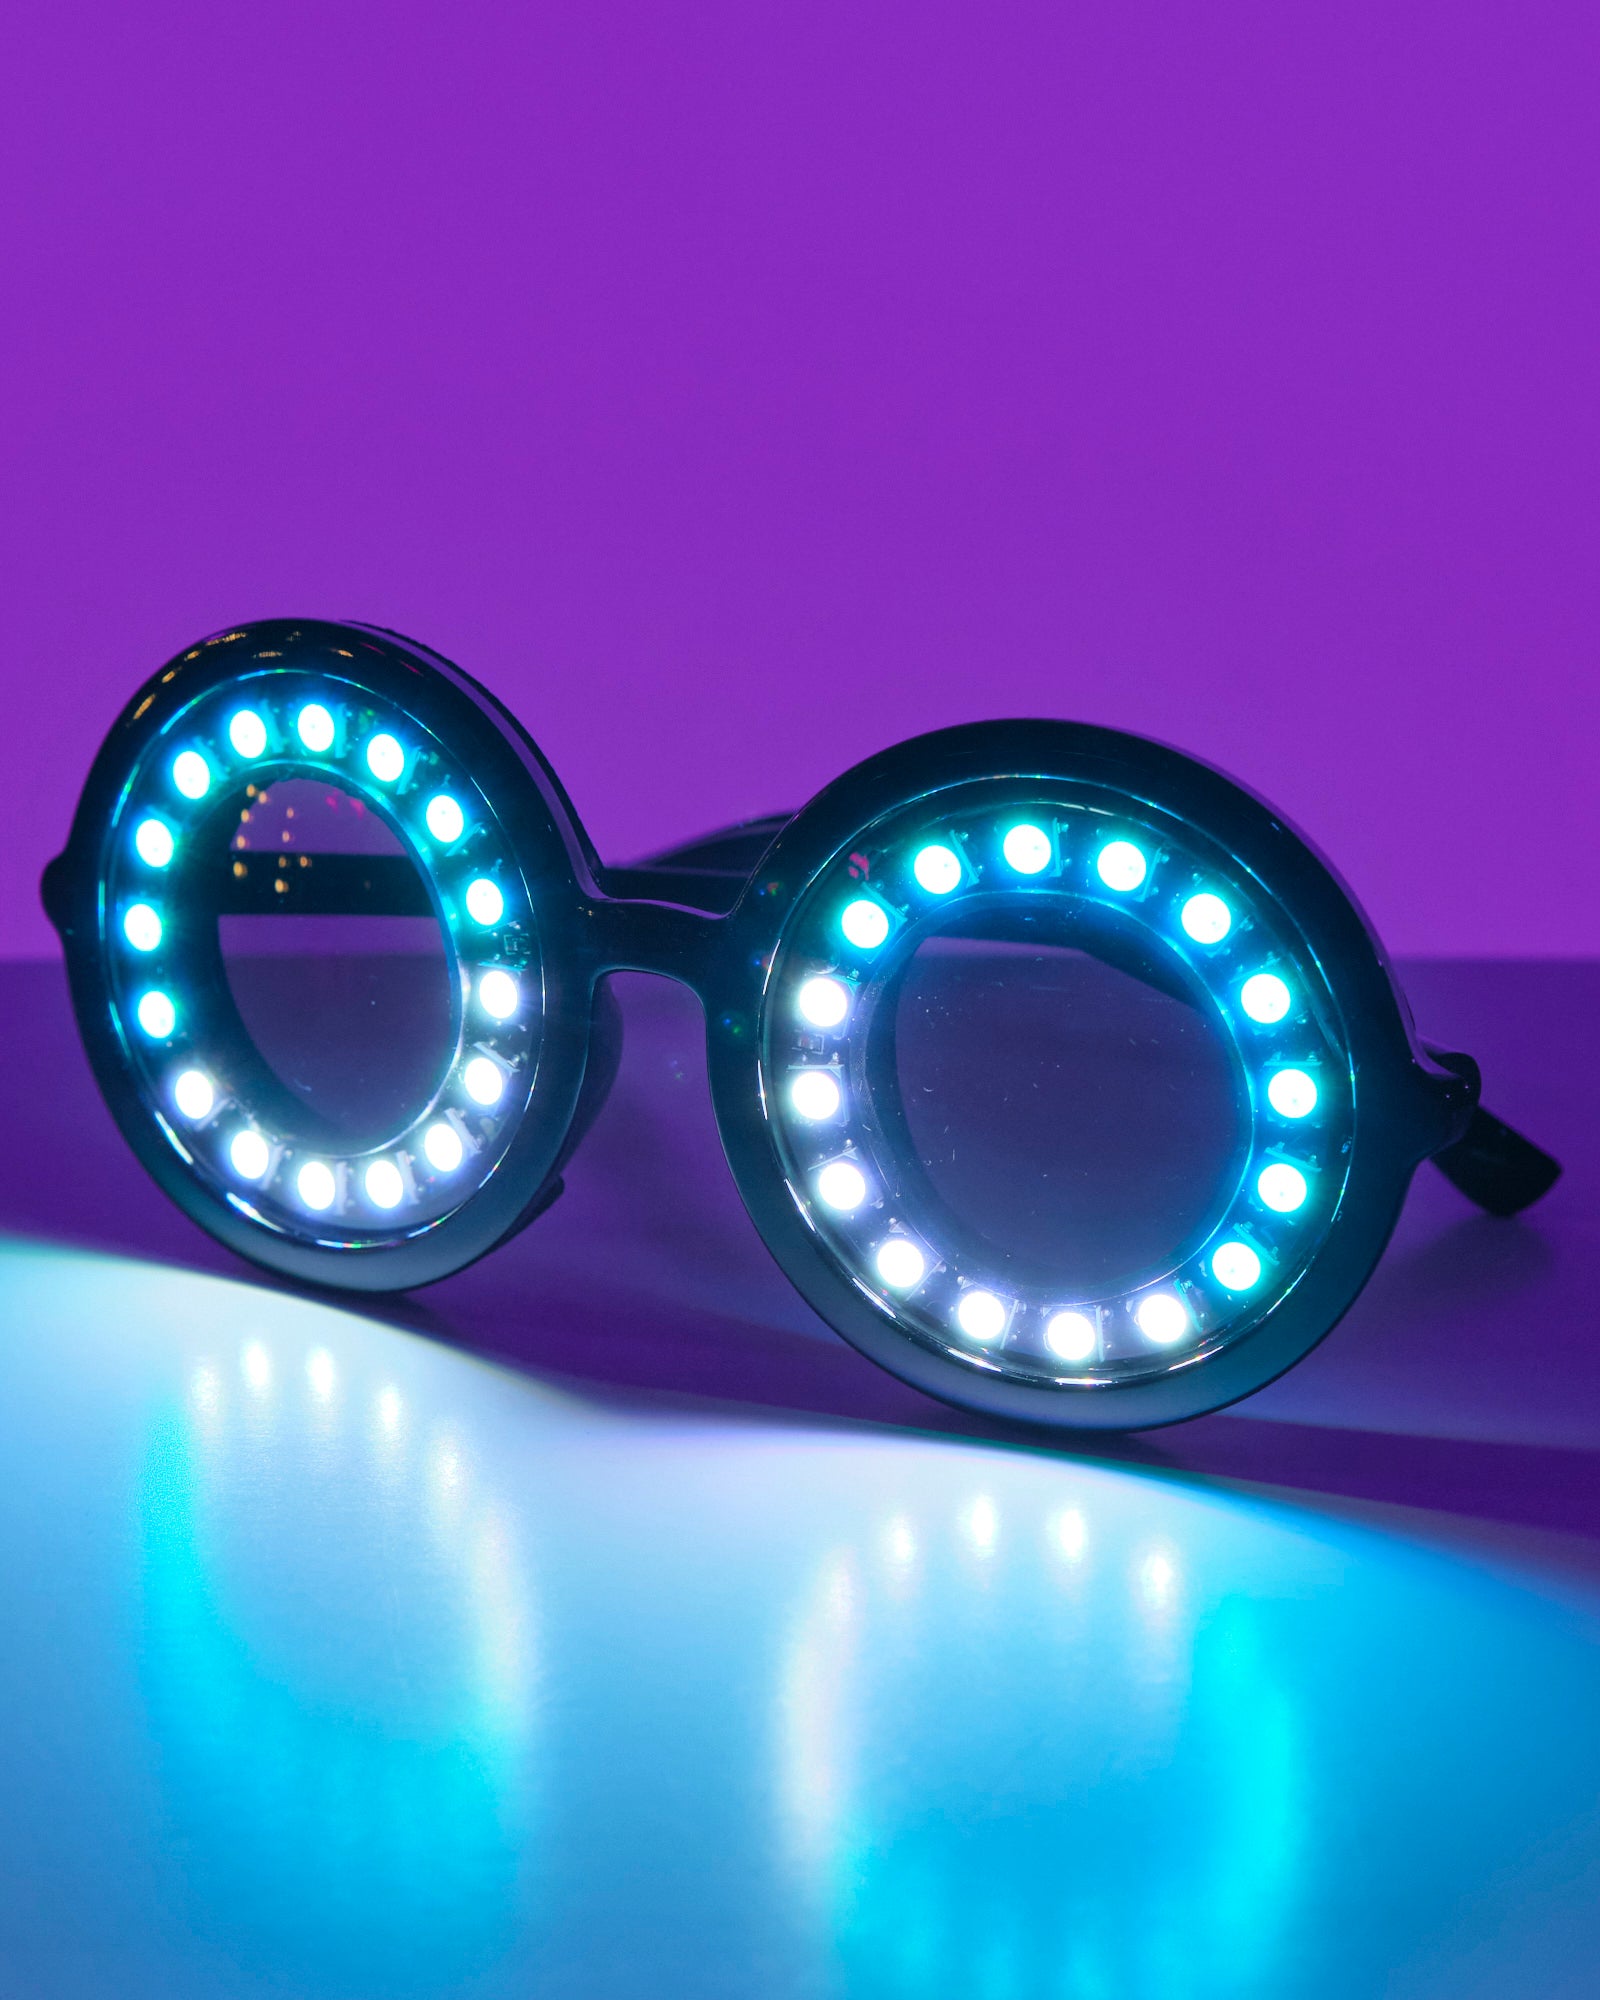 GloFX Pixel Pro LED Glasses 350 Epic